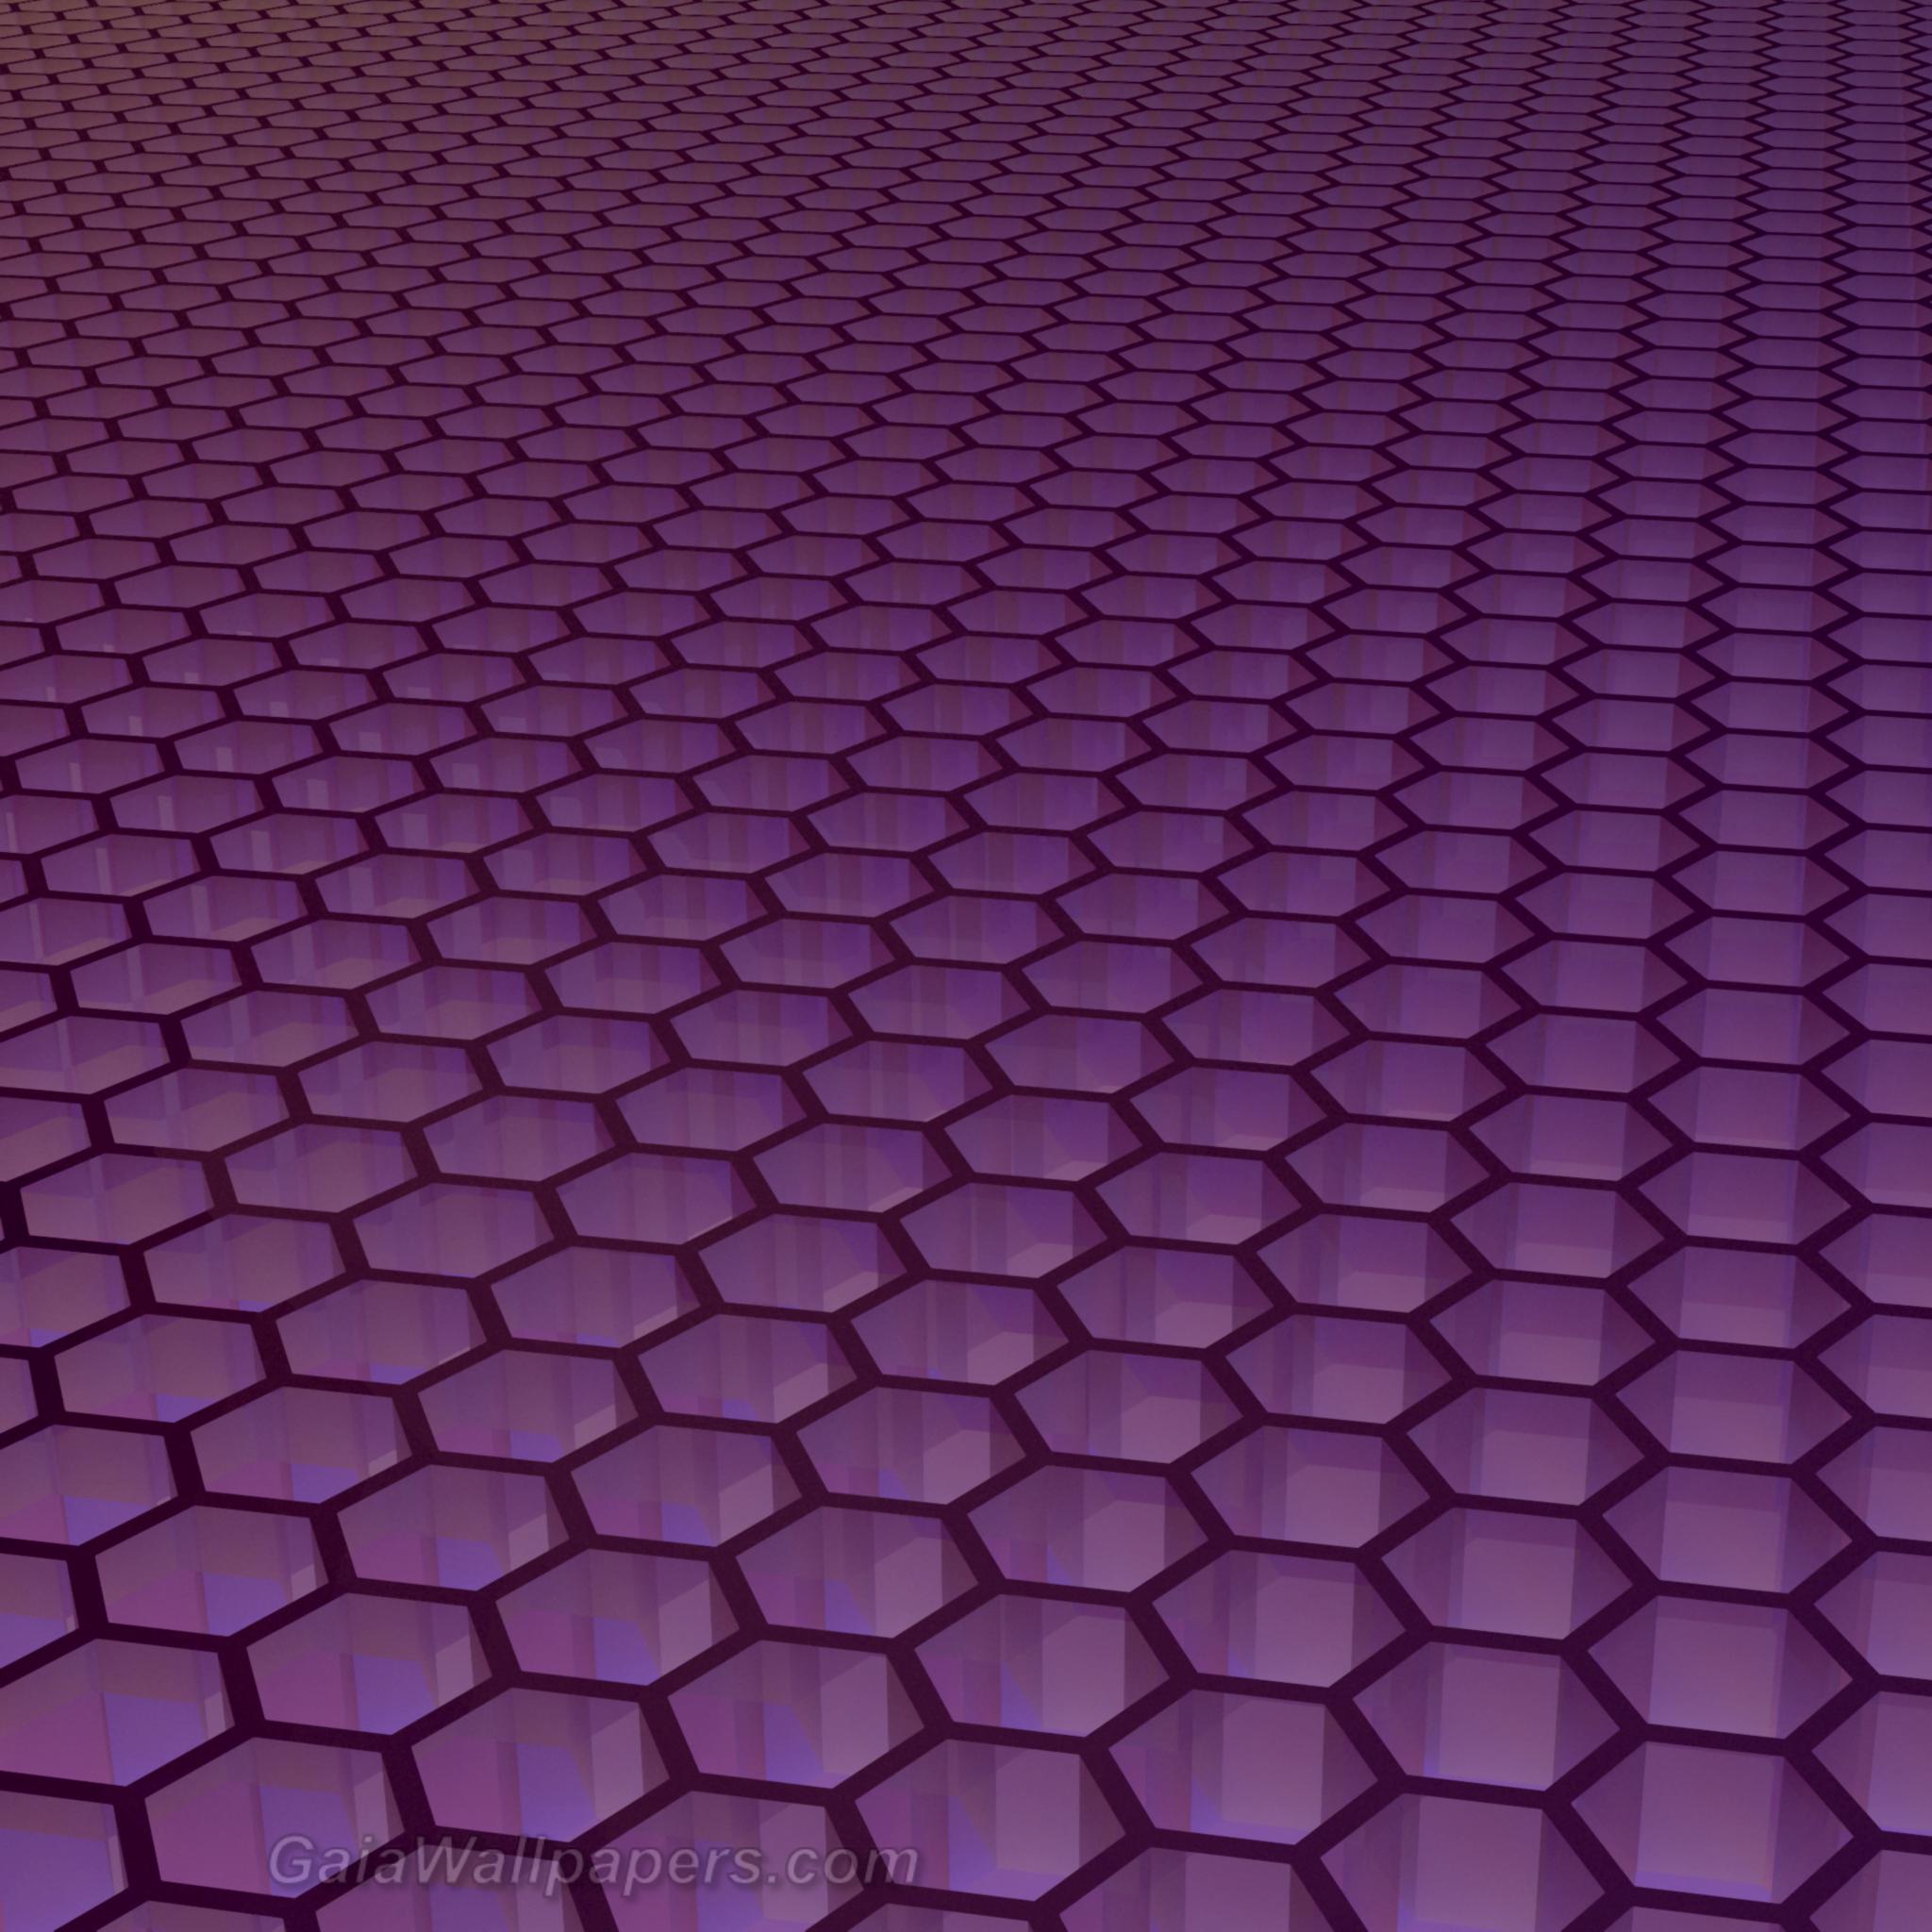 Grille infinie hexagonale violette - Fonds d'écran gratuits